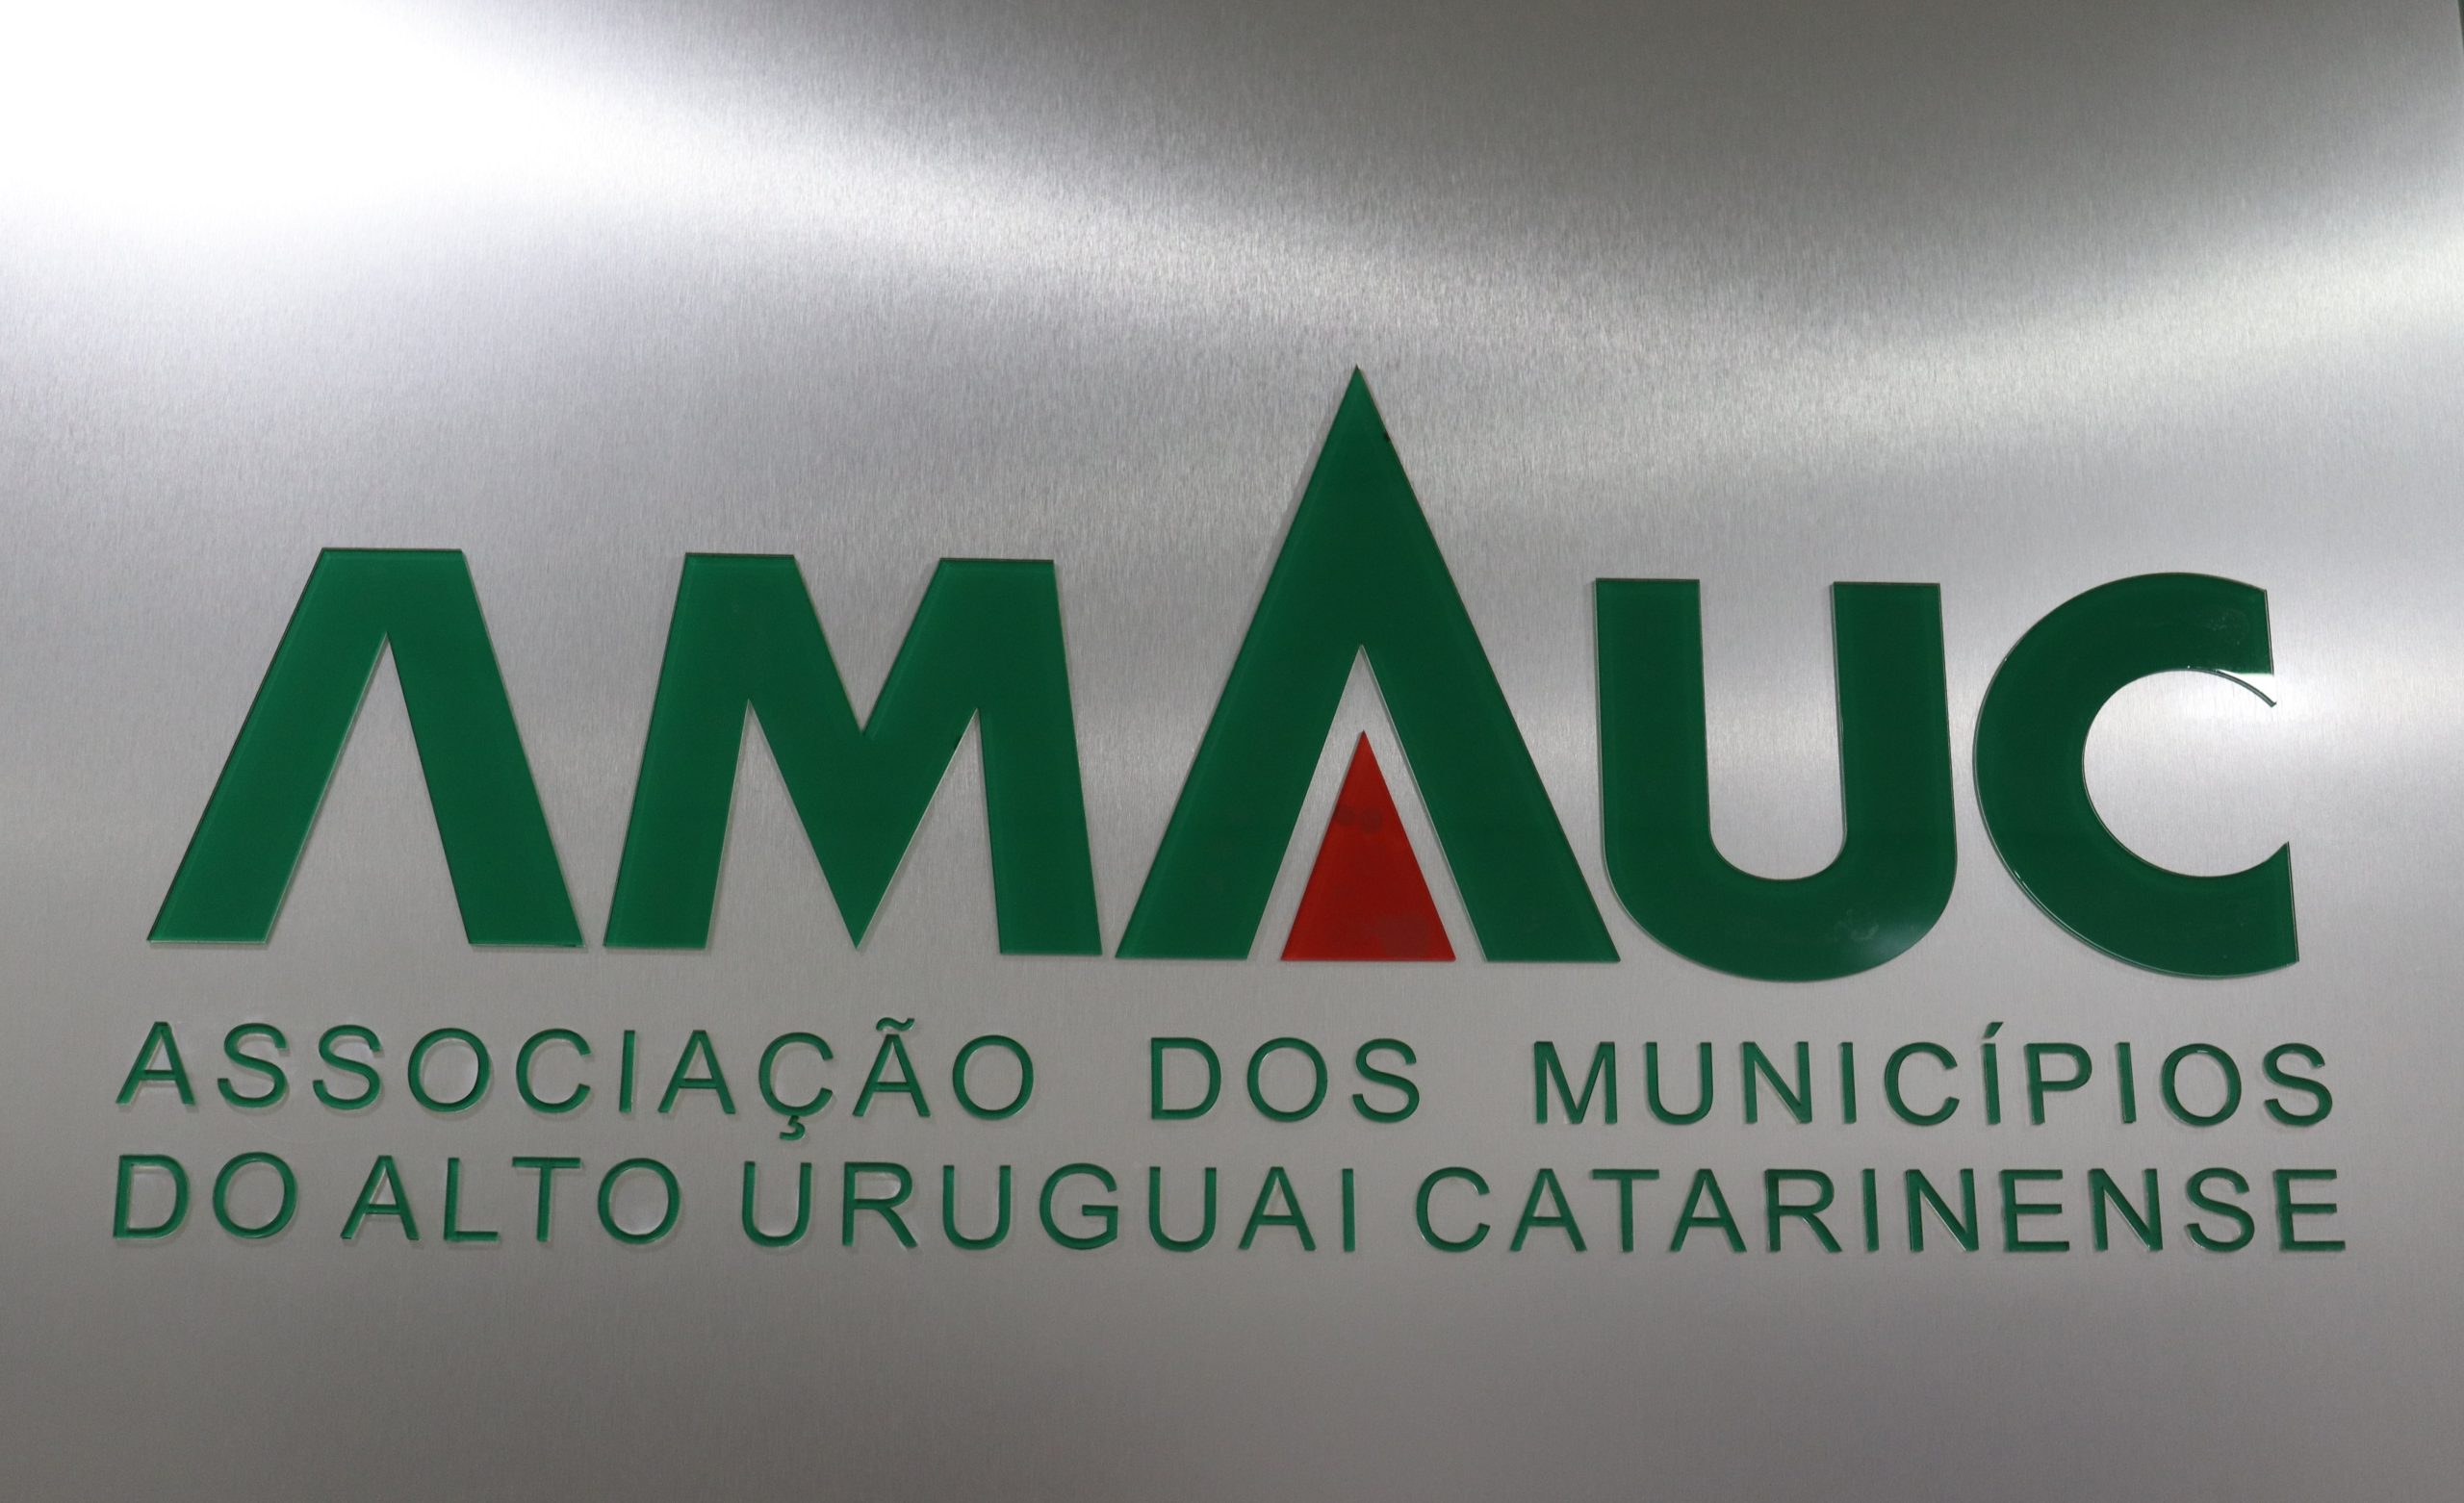 You are currently viewing Duas cidades da Amauc são vencedoras do Prêmio Band Cidades Excelentes